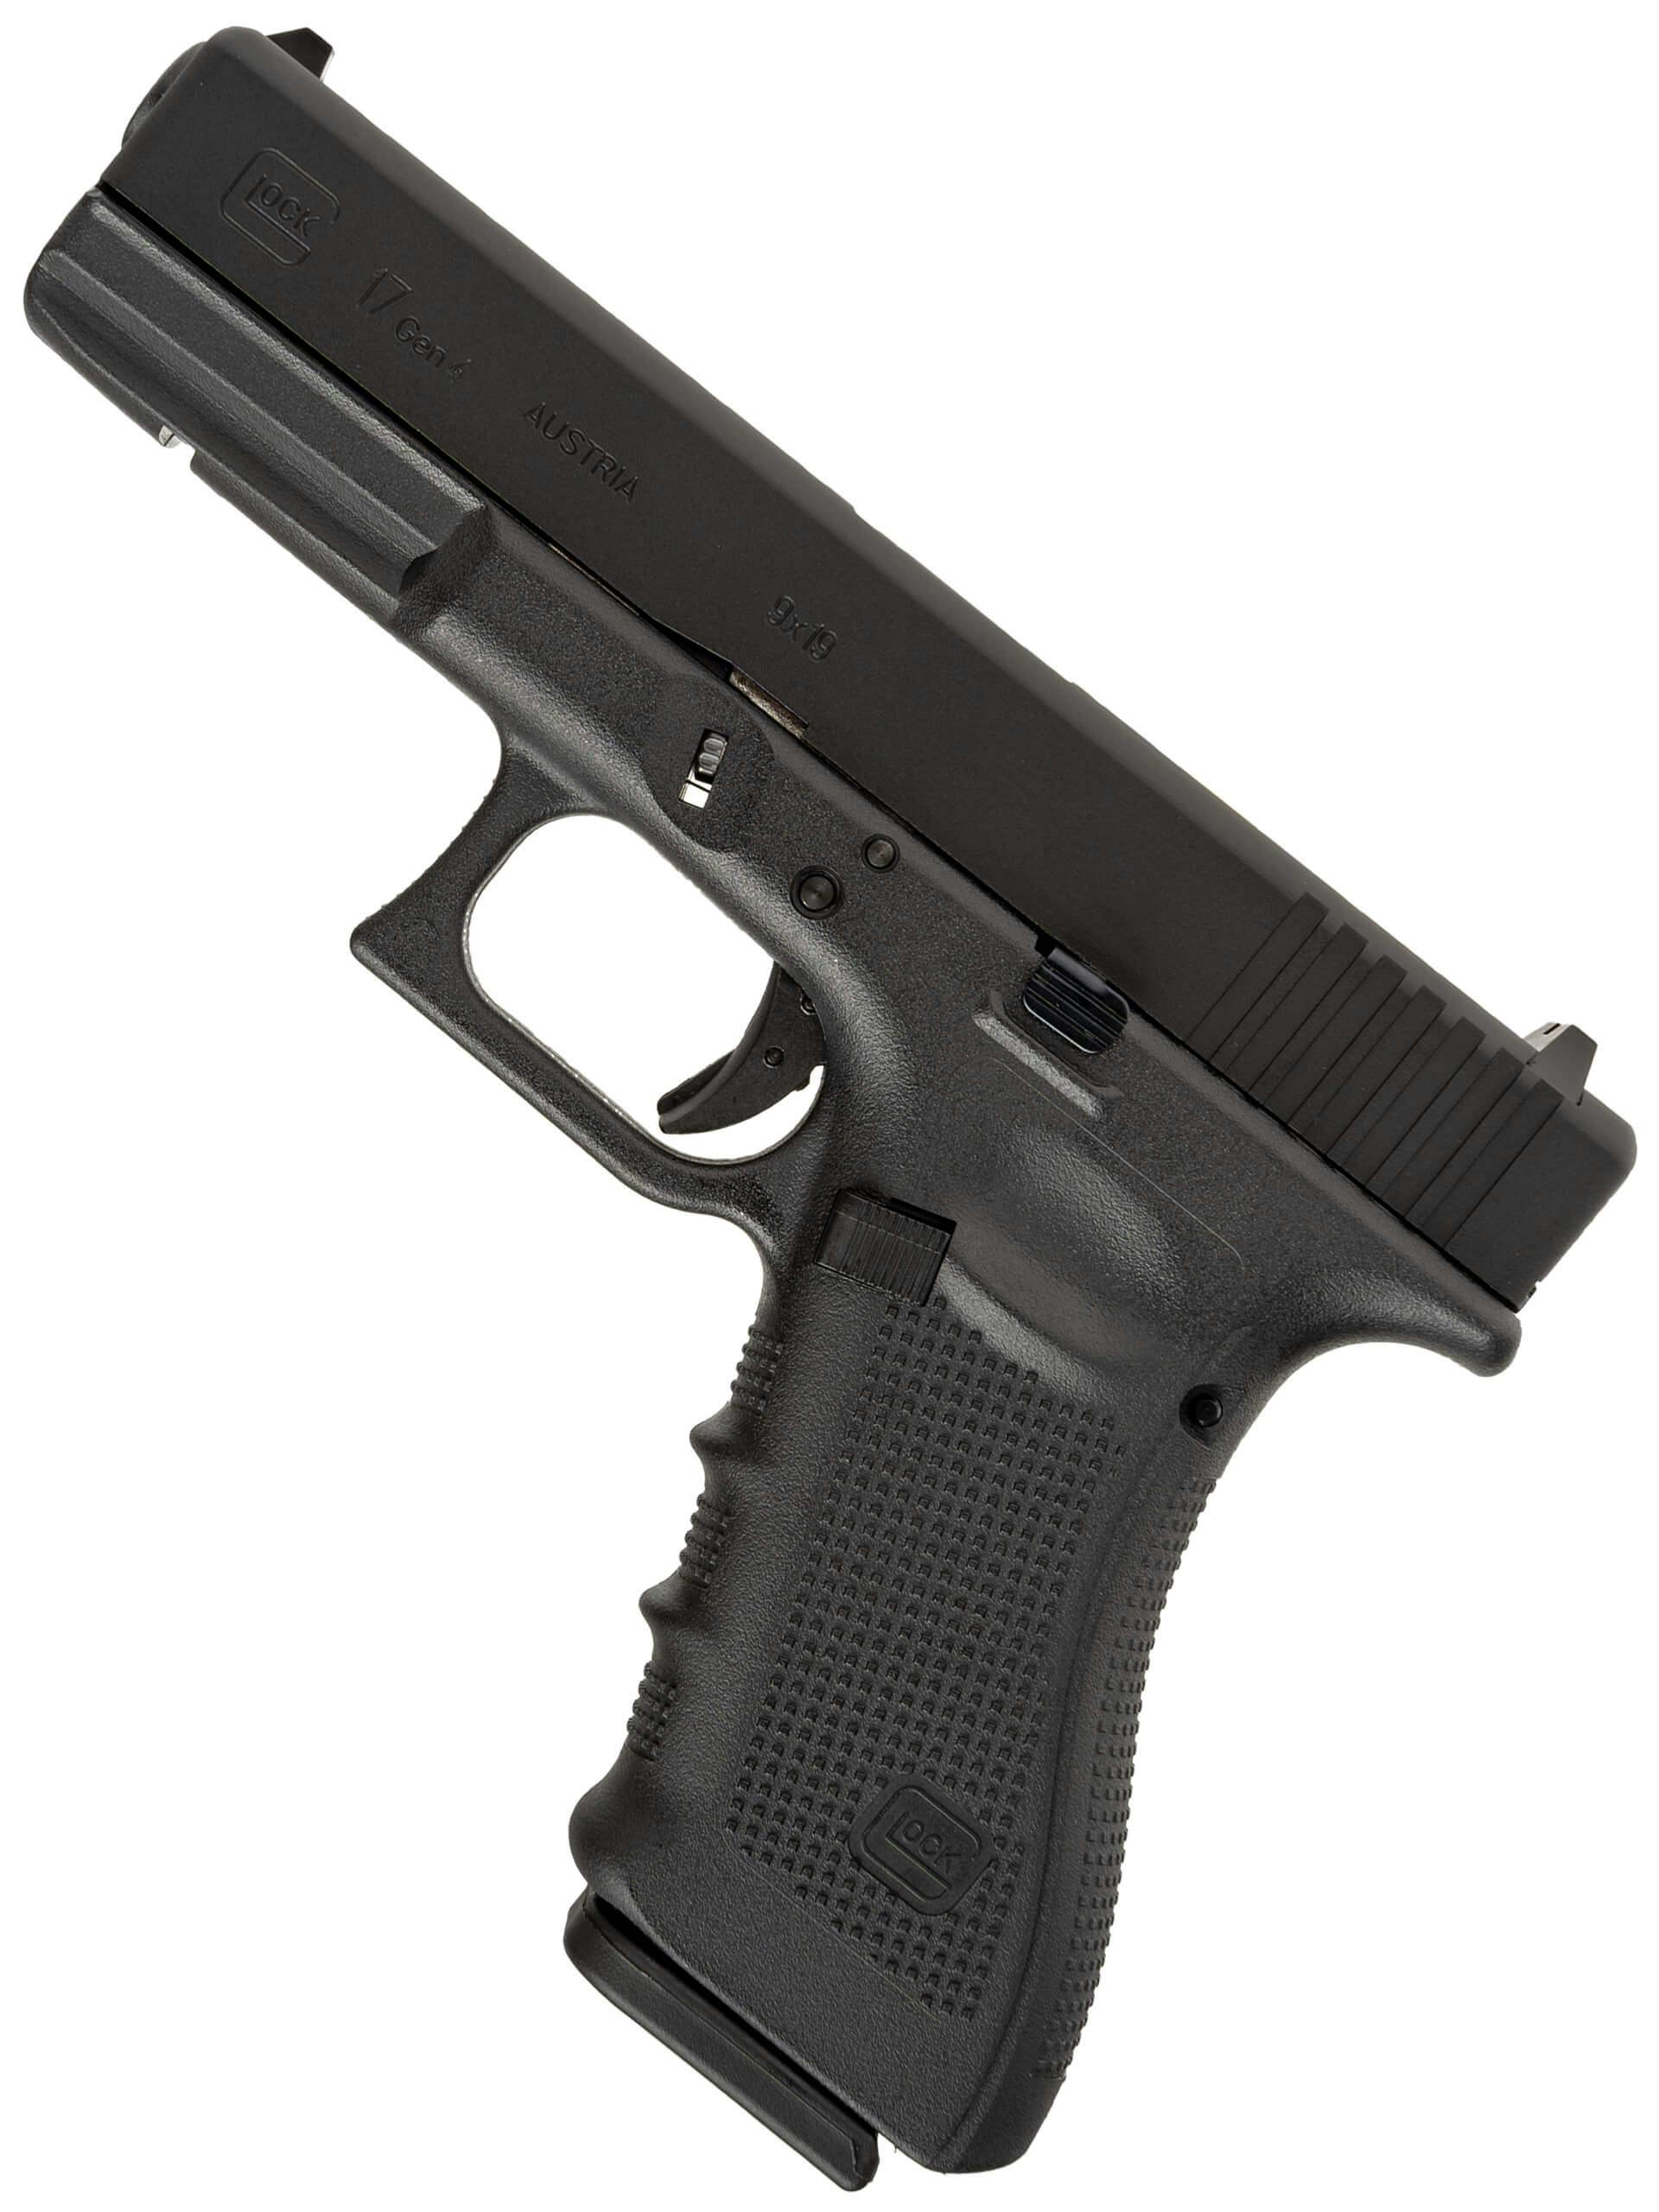 Umarex Glock 17 Gen 5 GBB Airsoft Pistol (by VFC)